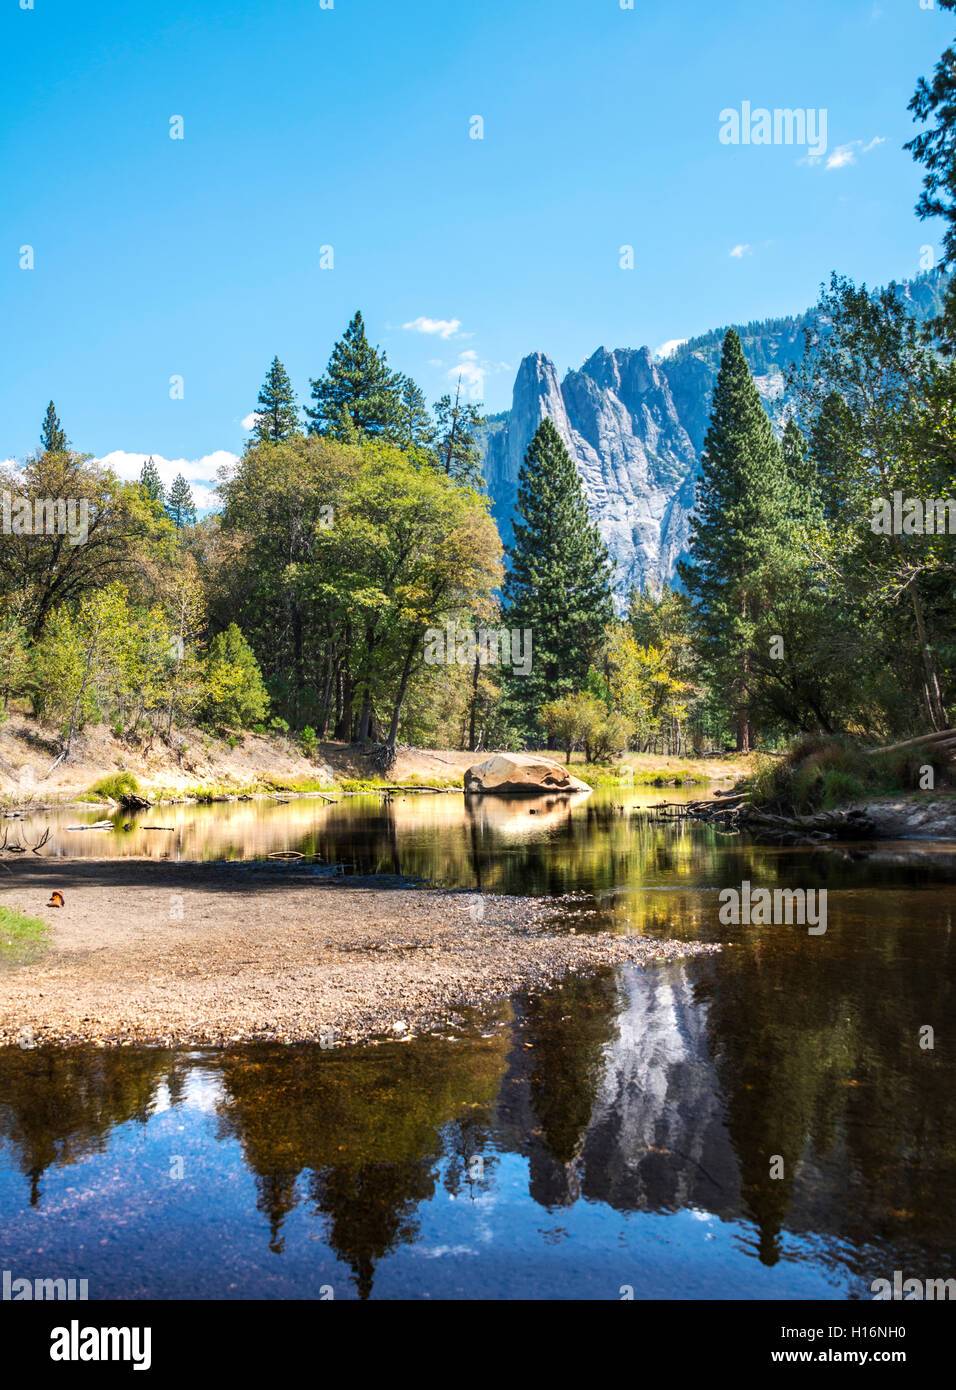 Berge im Wasser spiegelt, Merced River, Yosemite Valley, Yosemite Nationalpark, UNESCO-Weltkulturerbe, Kalifornien, USA Stockfoto